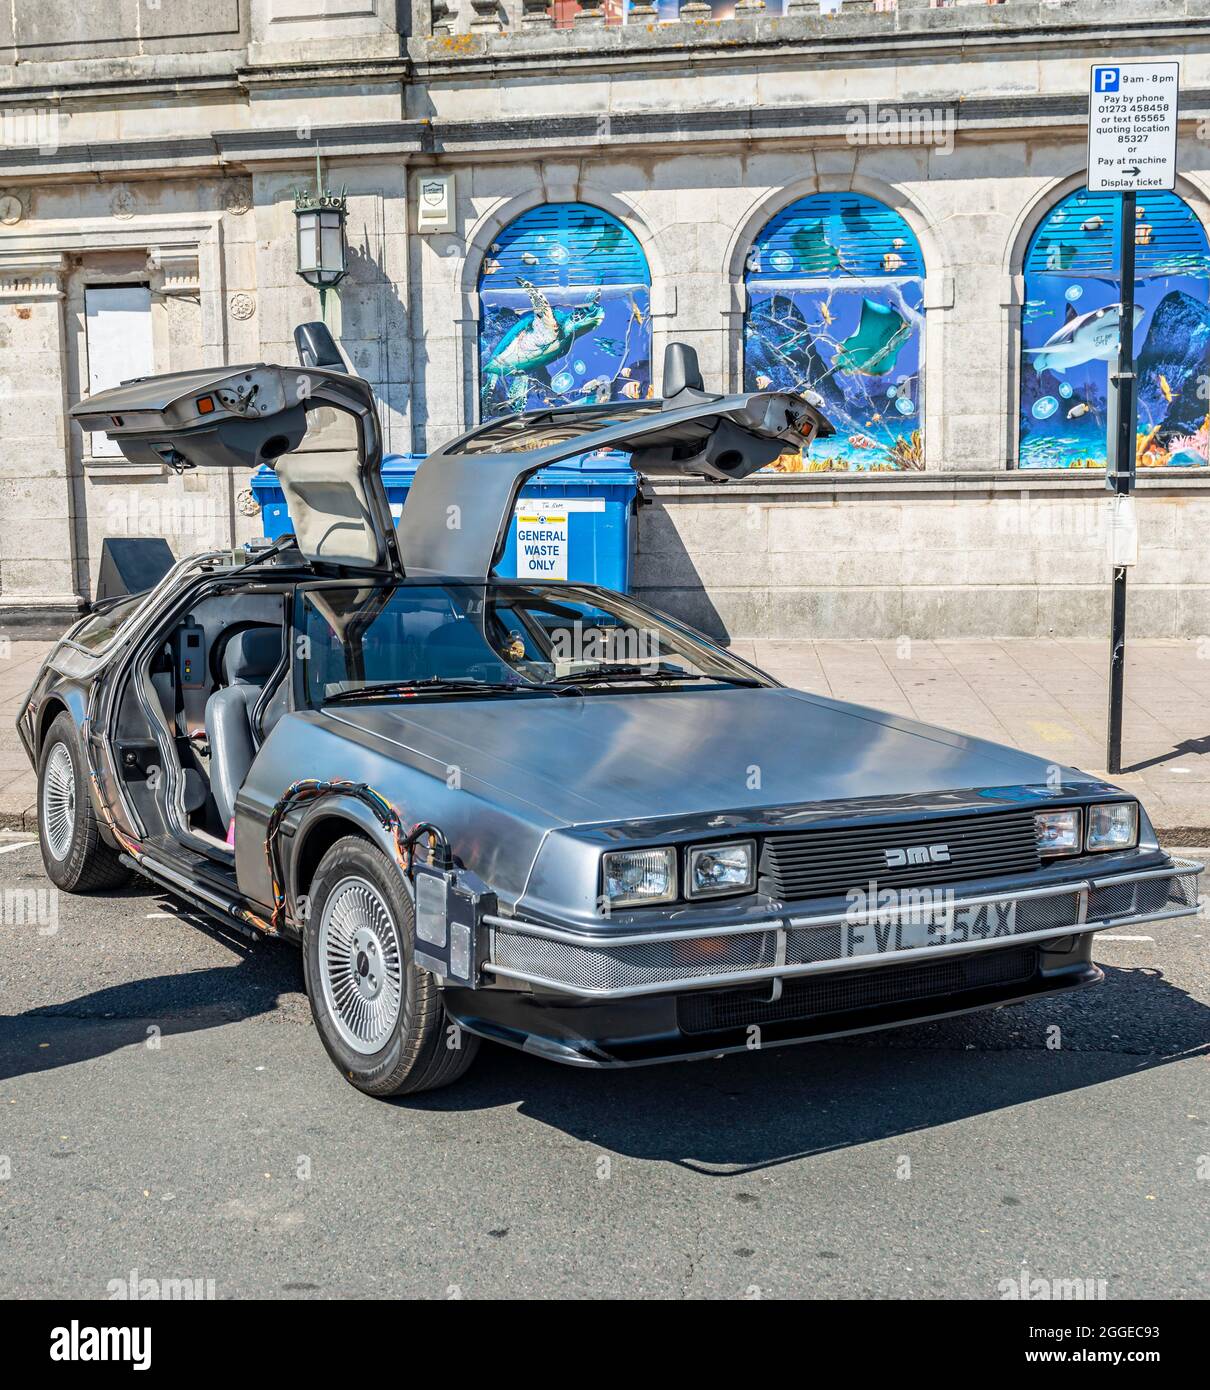 DeLorean DMC, voiture d'époque avec portes papillon, Brighton Beach, Brighton, East Sussex, Angleterre, Royaume-Uni Banque D'Images